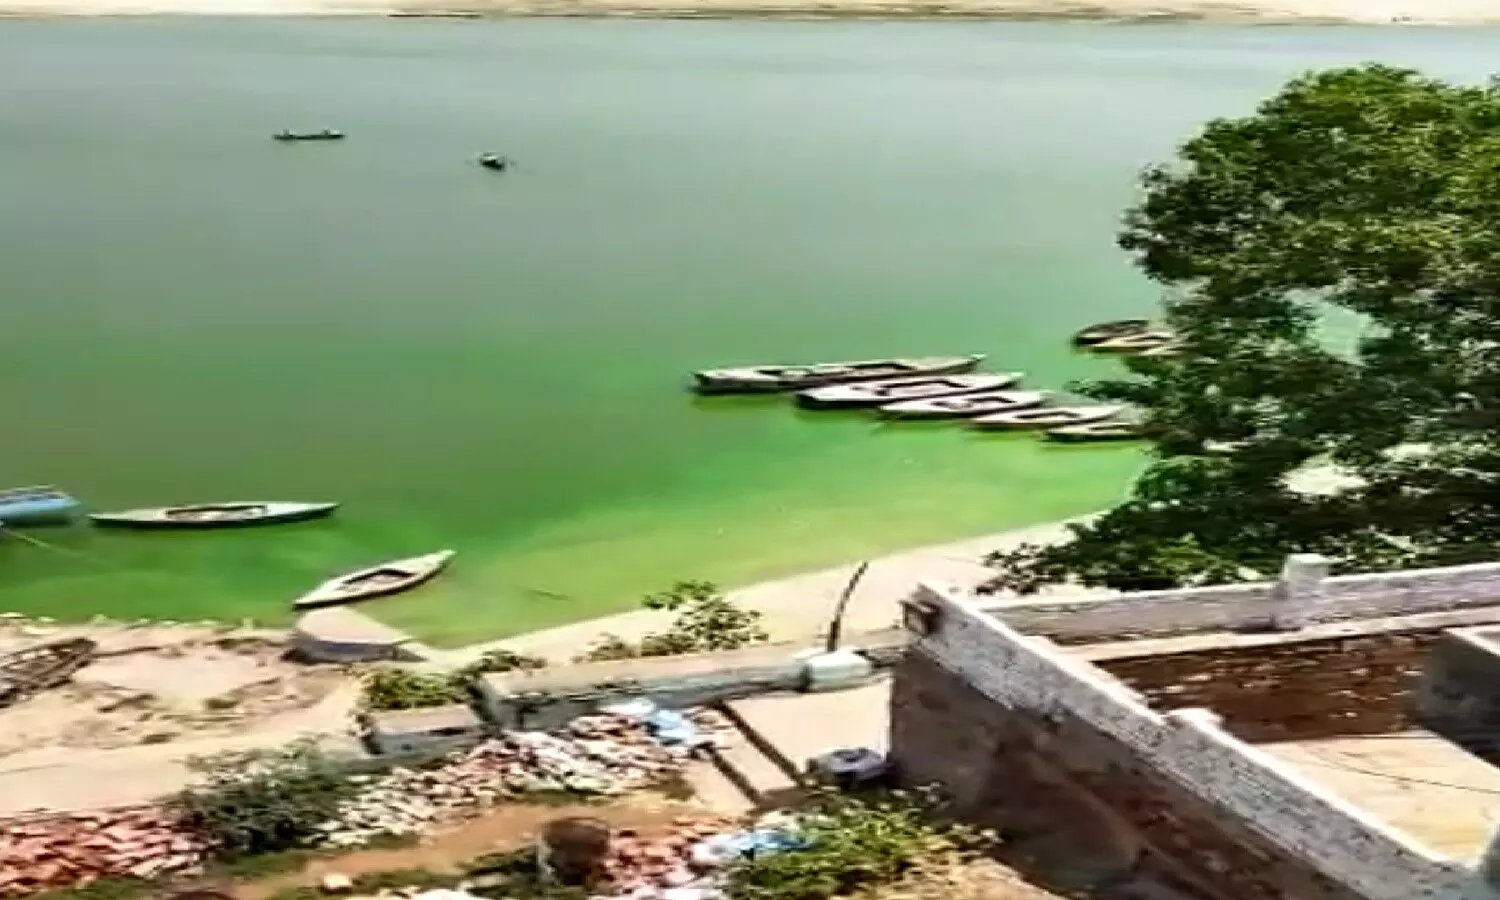 Varanasi News: गंगा का पानी हरा क्यों हुआ, वैज्ञानिकों ने बताई वजह, हालात खराब होने की जताई आशंका